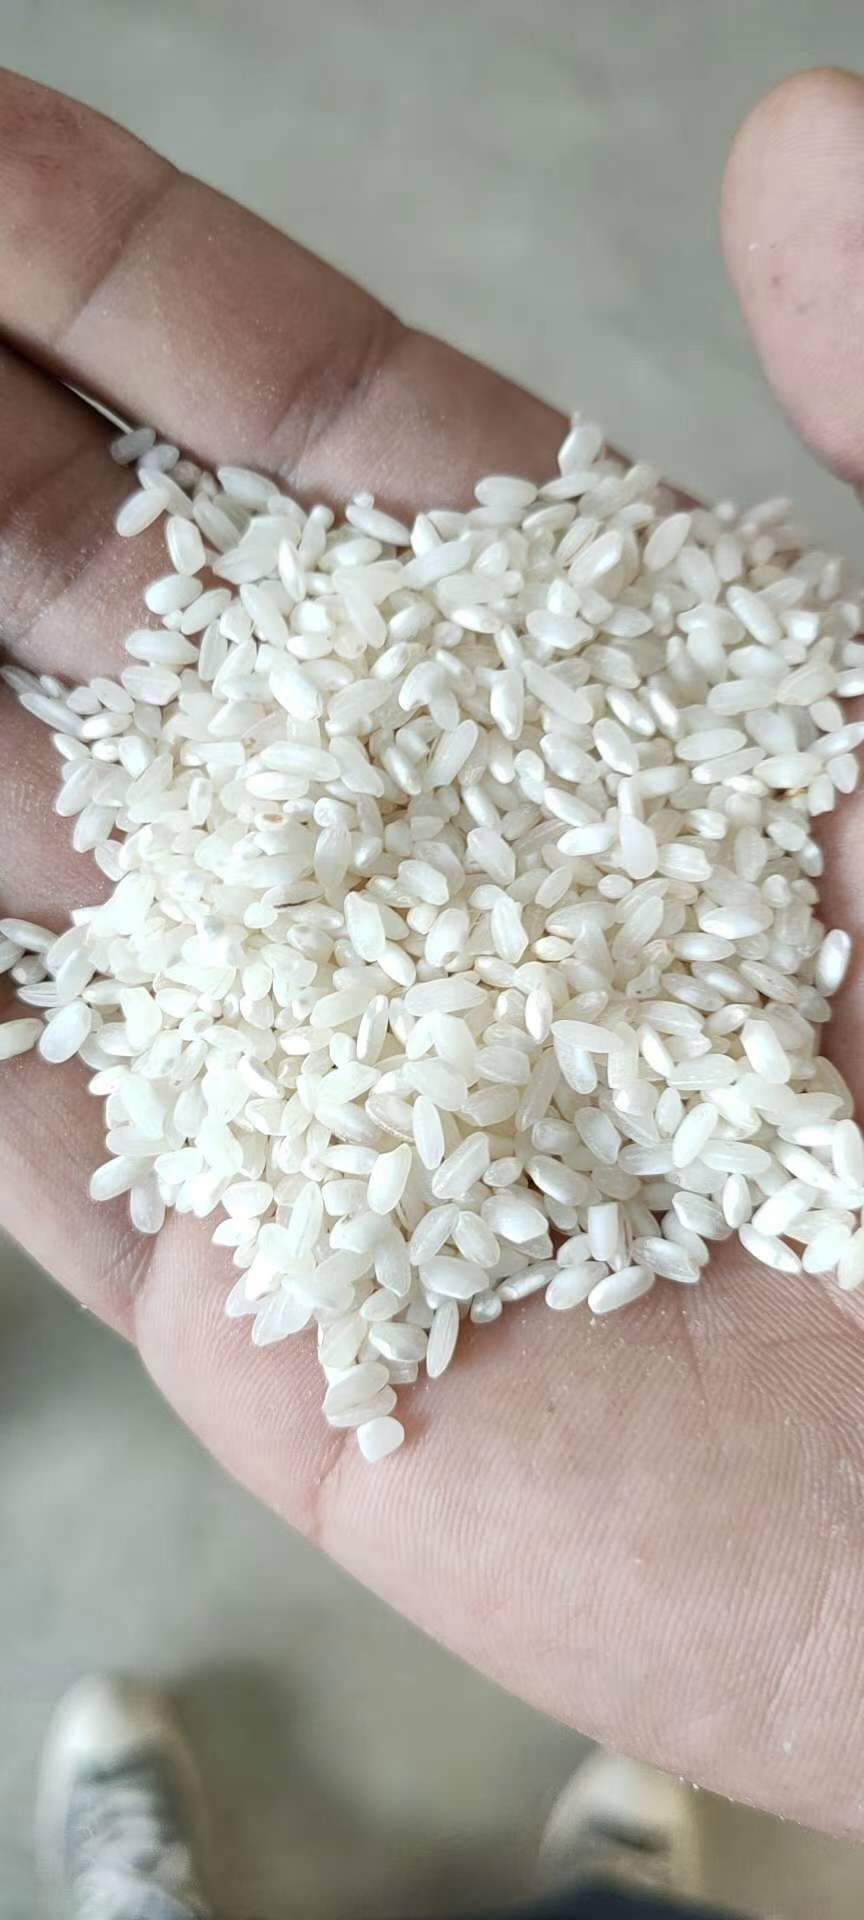 [大米批发]大米 厂家直销桂朝早米,专做米线米粉肠粉凉皮凉虾,货源